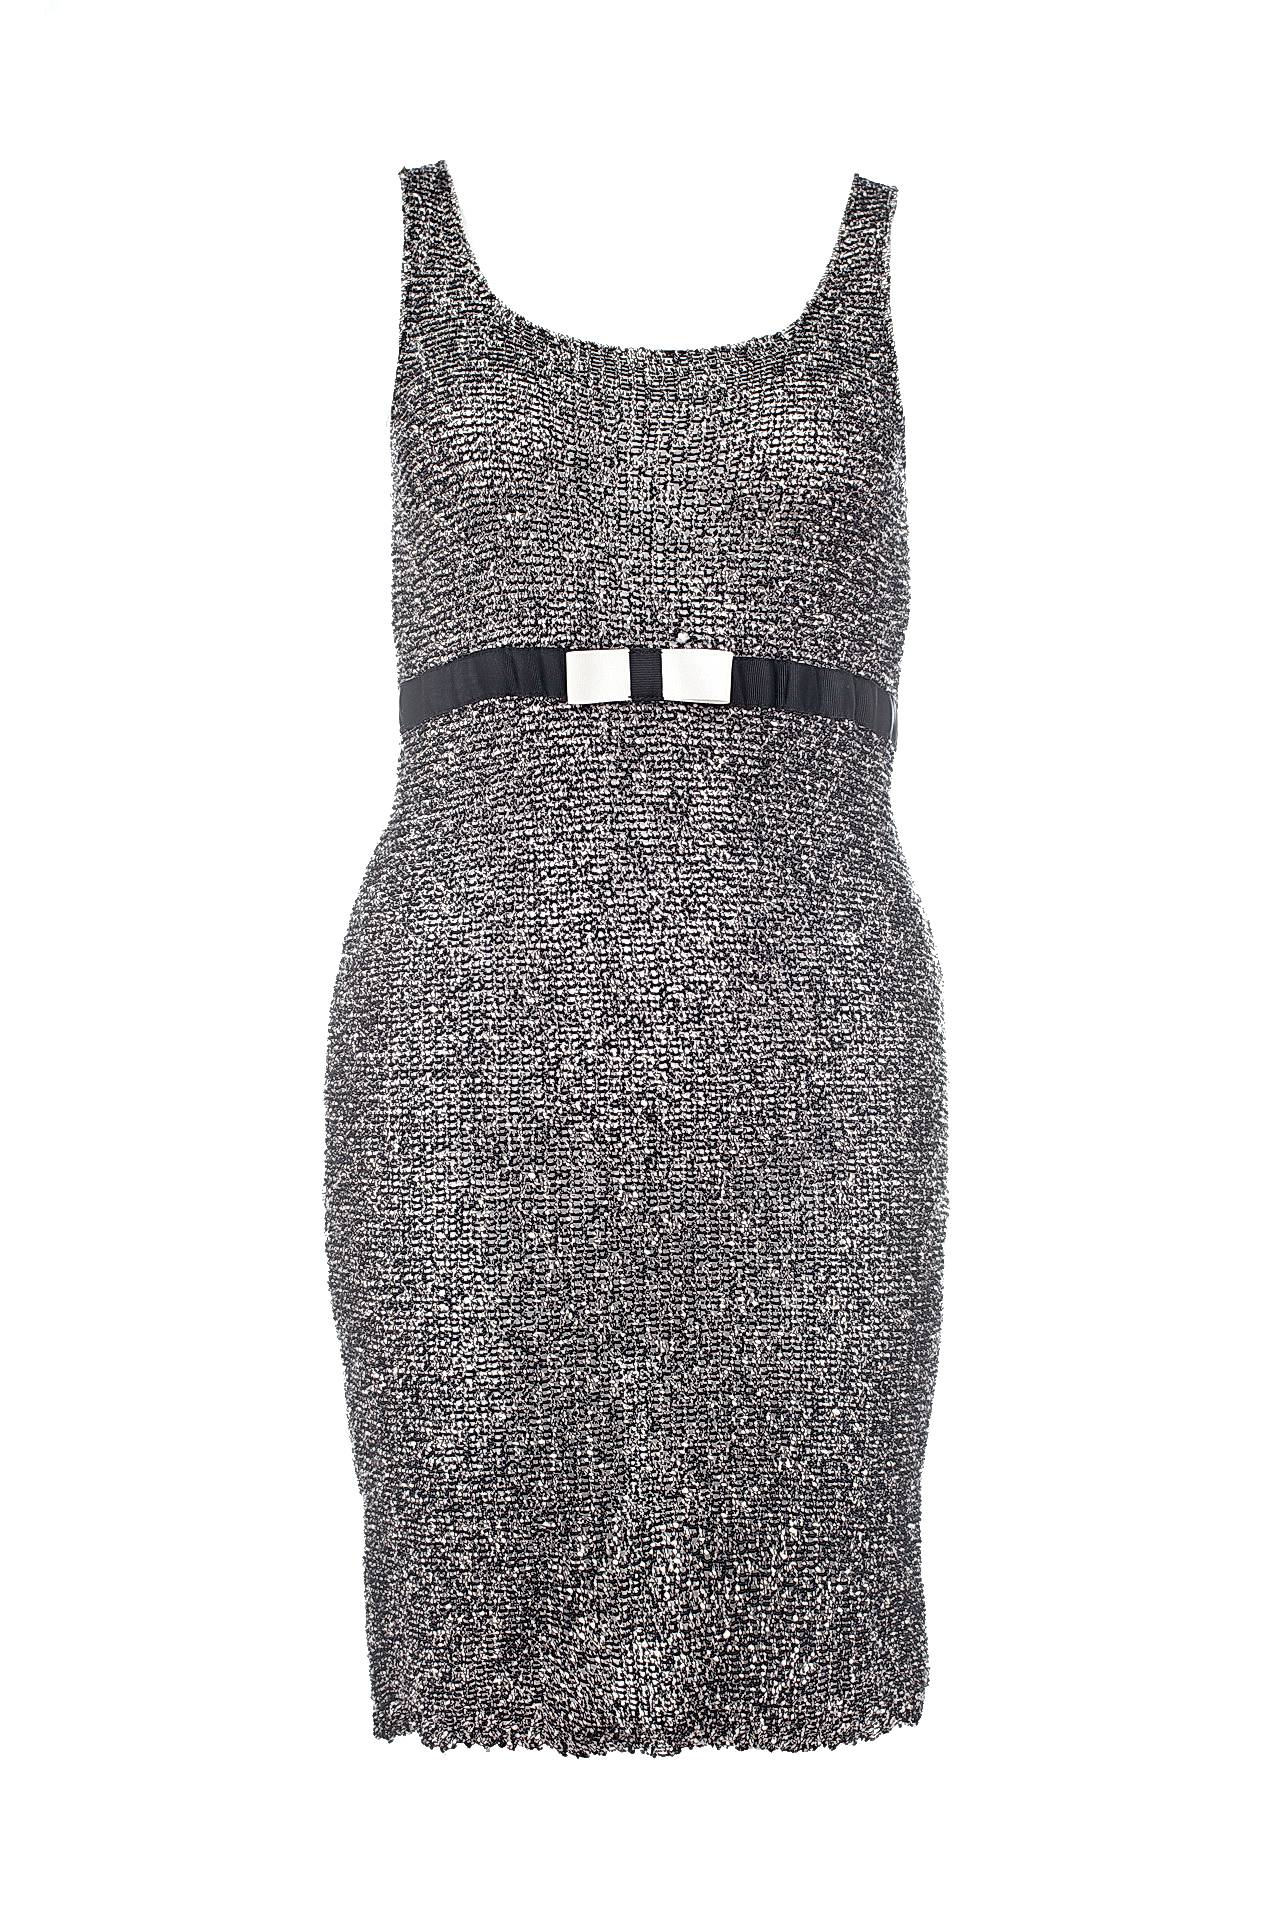 Одежда женская Платье NORTHLAND (3001E/11.1). Купить за 5450 руб.